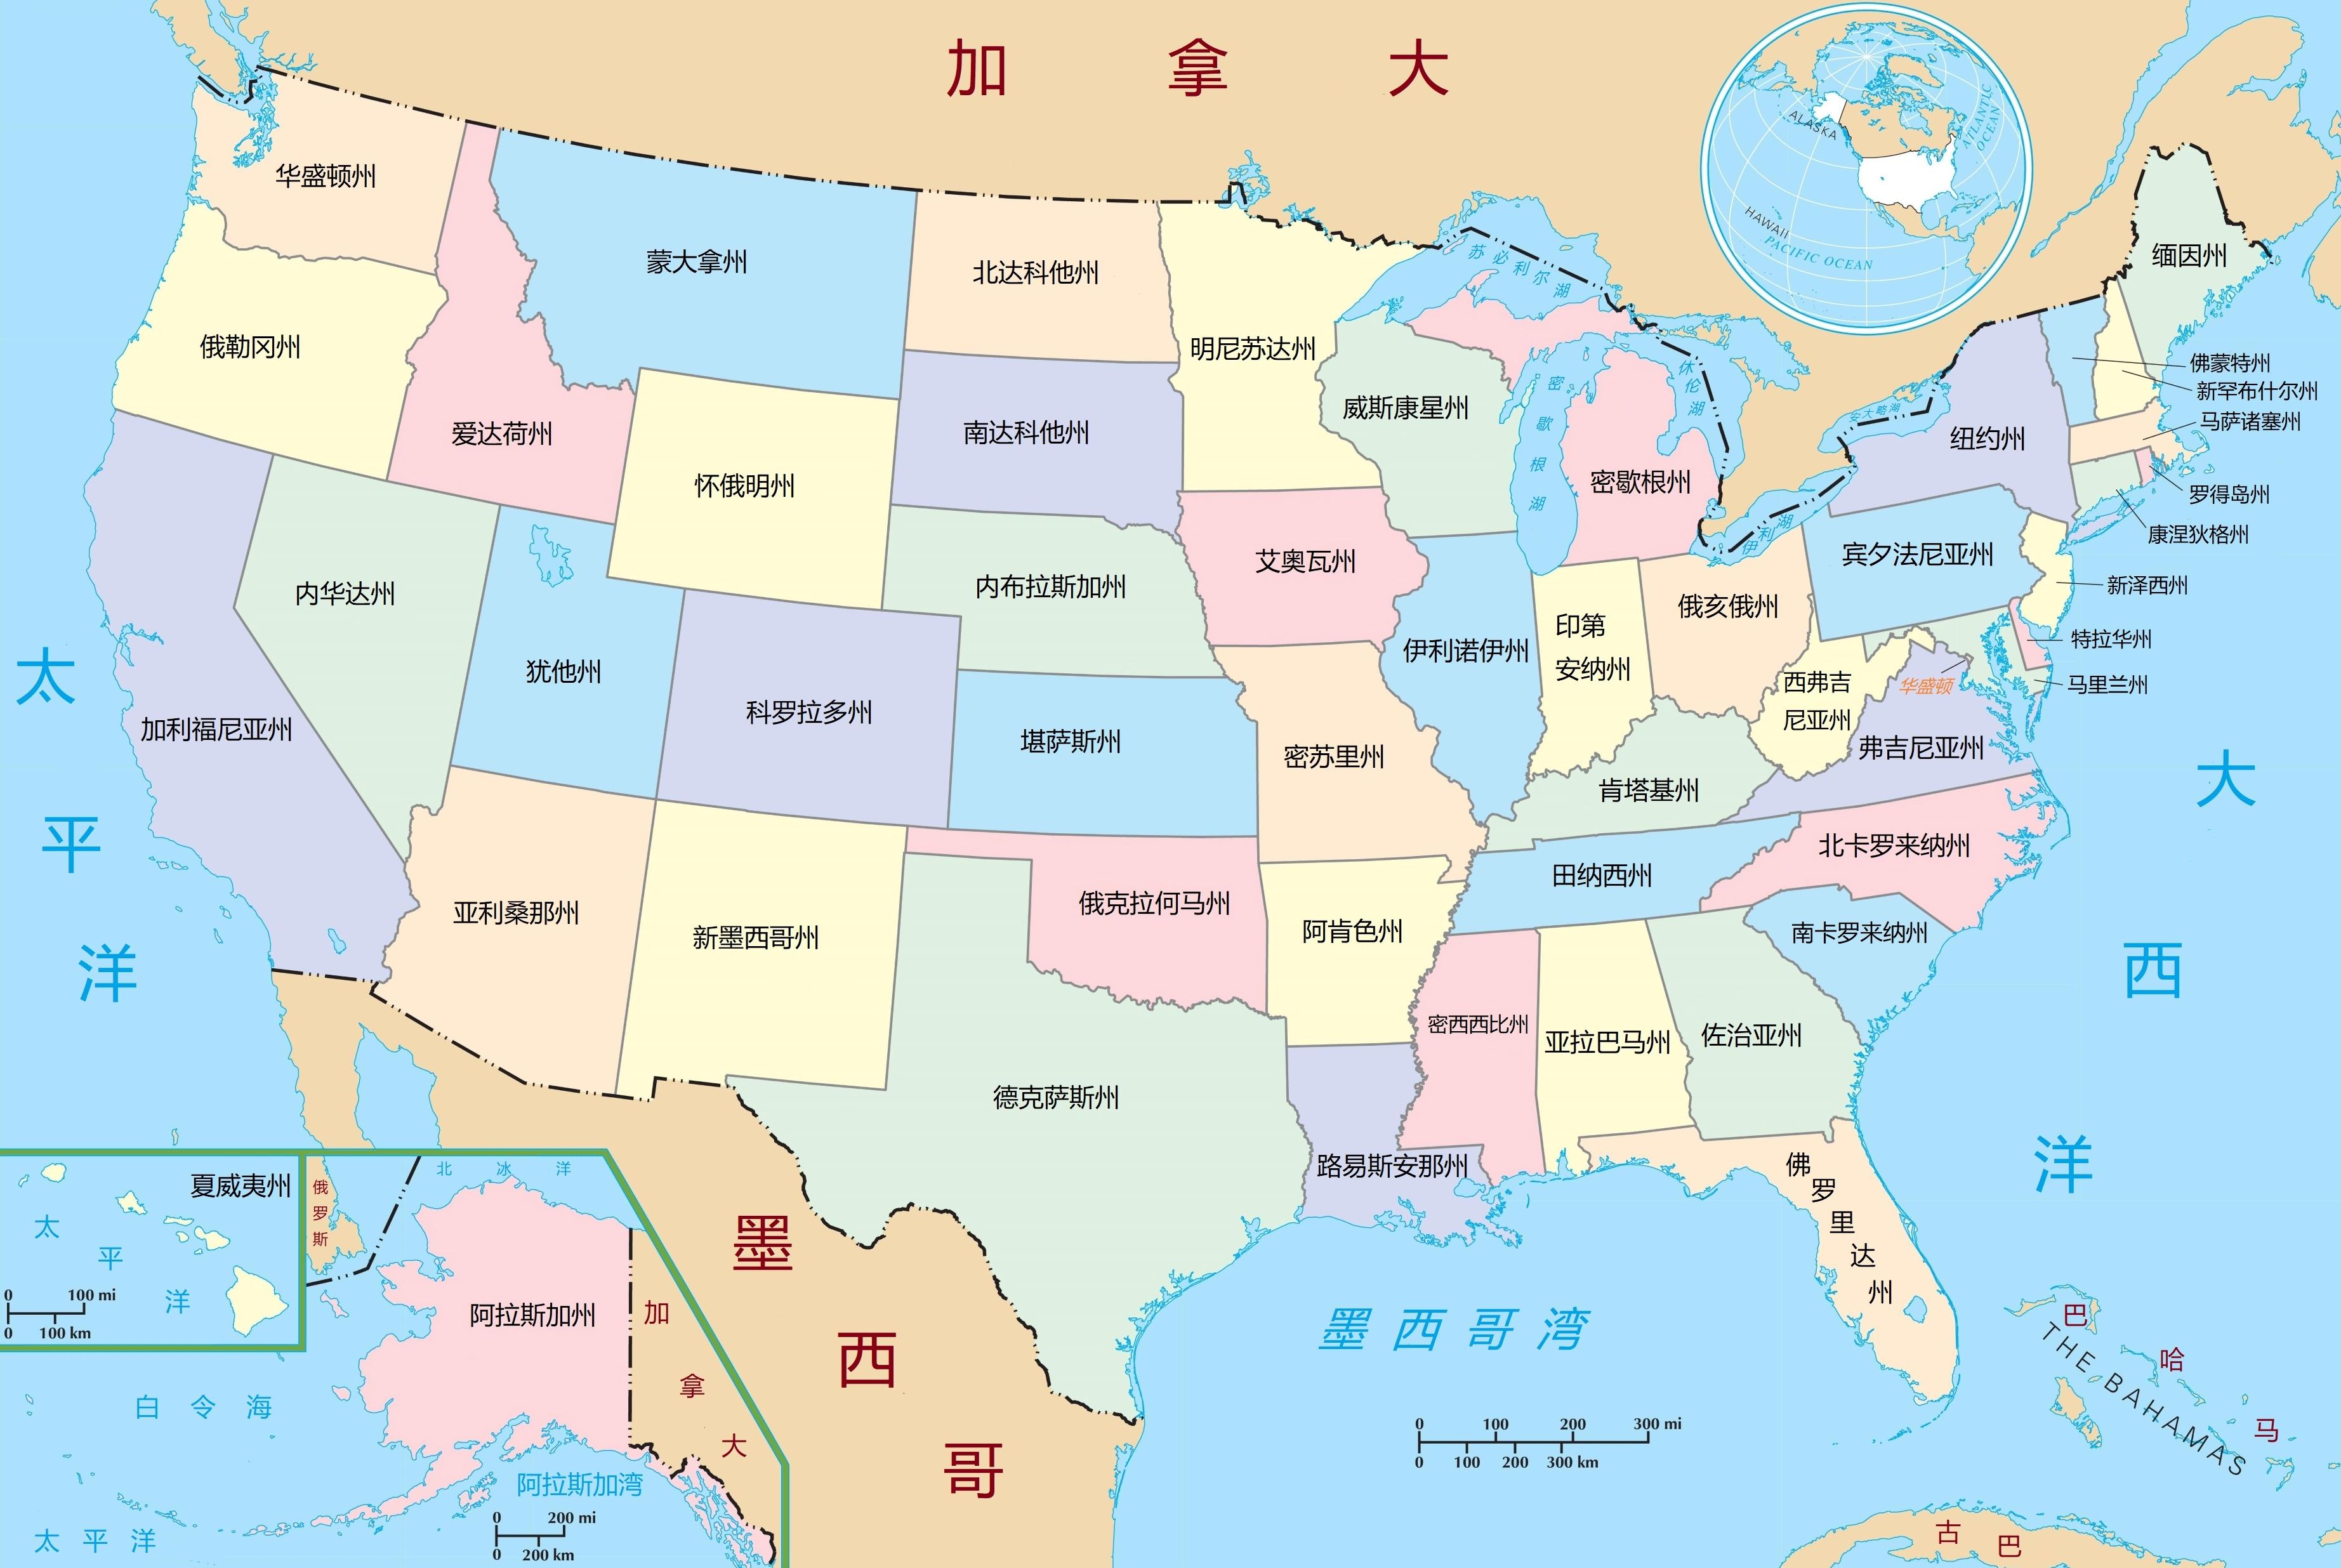 分享自制的美国地图 